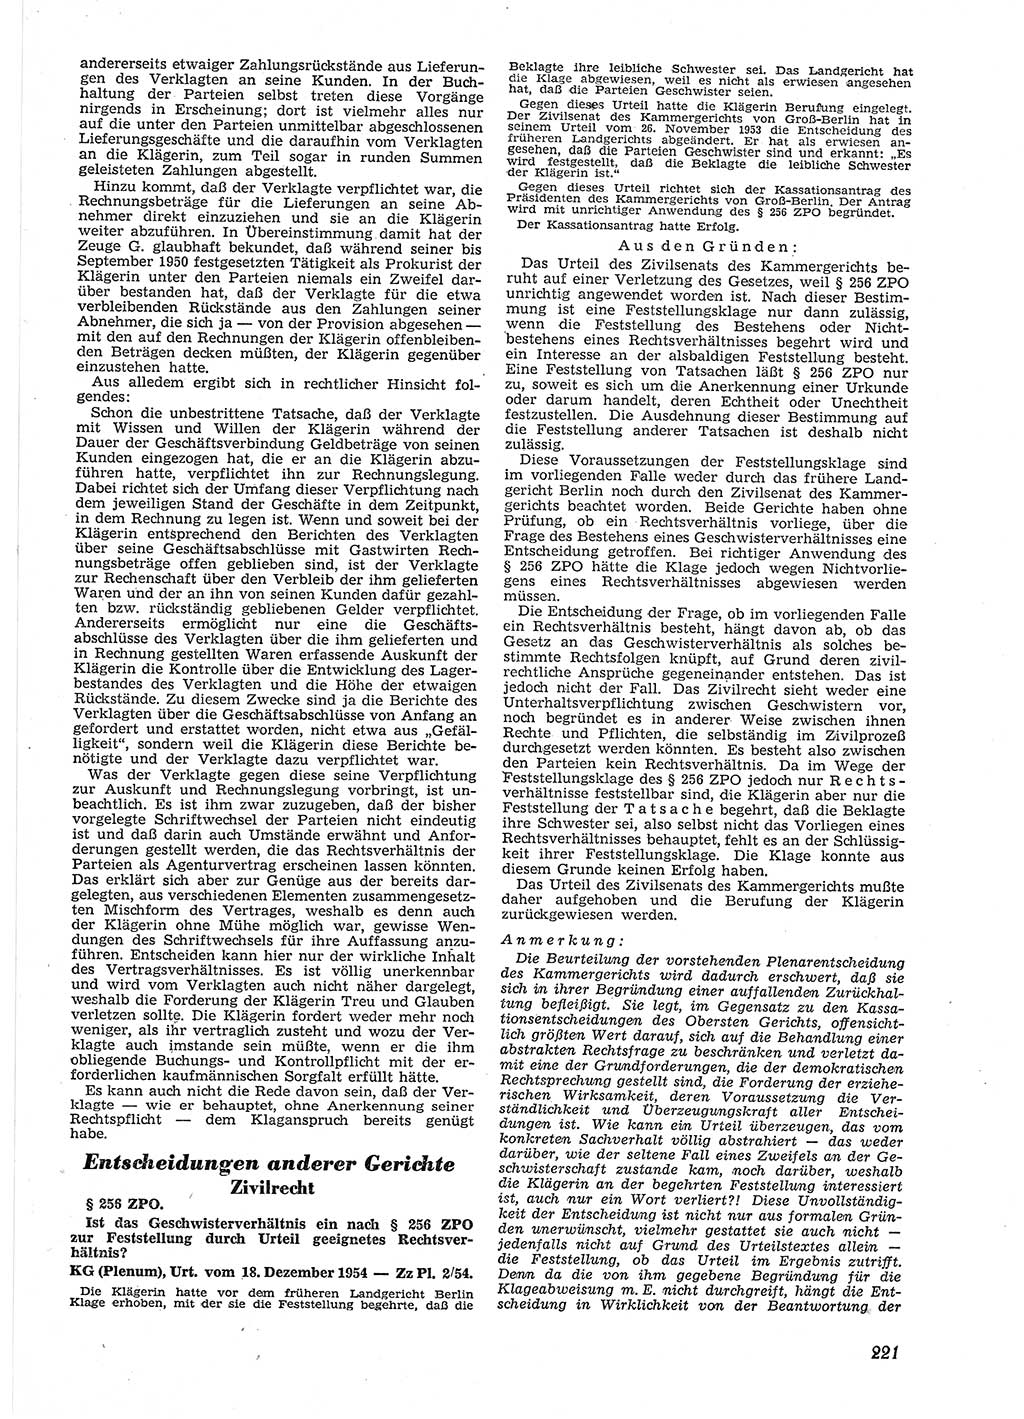 Neue Justiz (NJ), Zeitschrift für Recht und Rechtswissenschaft [Deutsche Demokratische Republik (DDR)], 9. Jahrgang 1955, Seite 221 (NJ DDR 1955, S. 221)